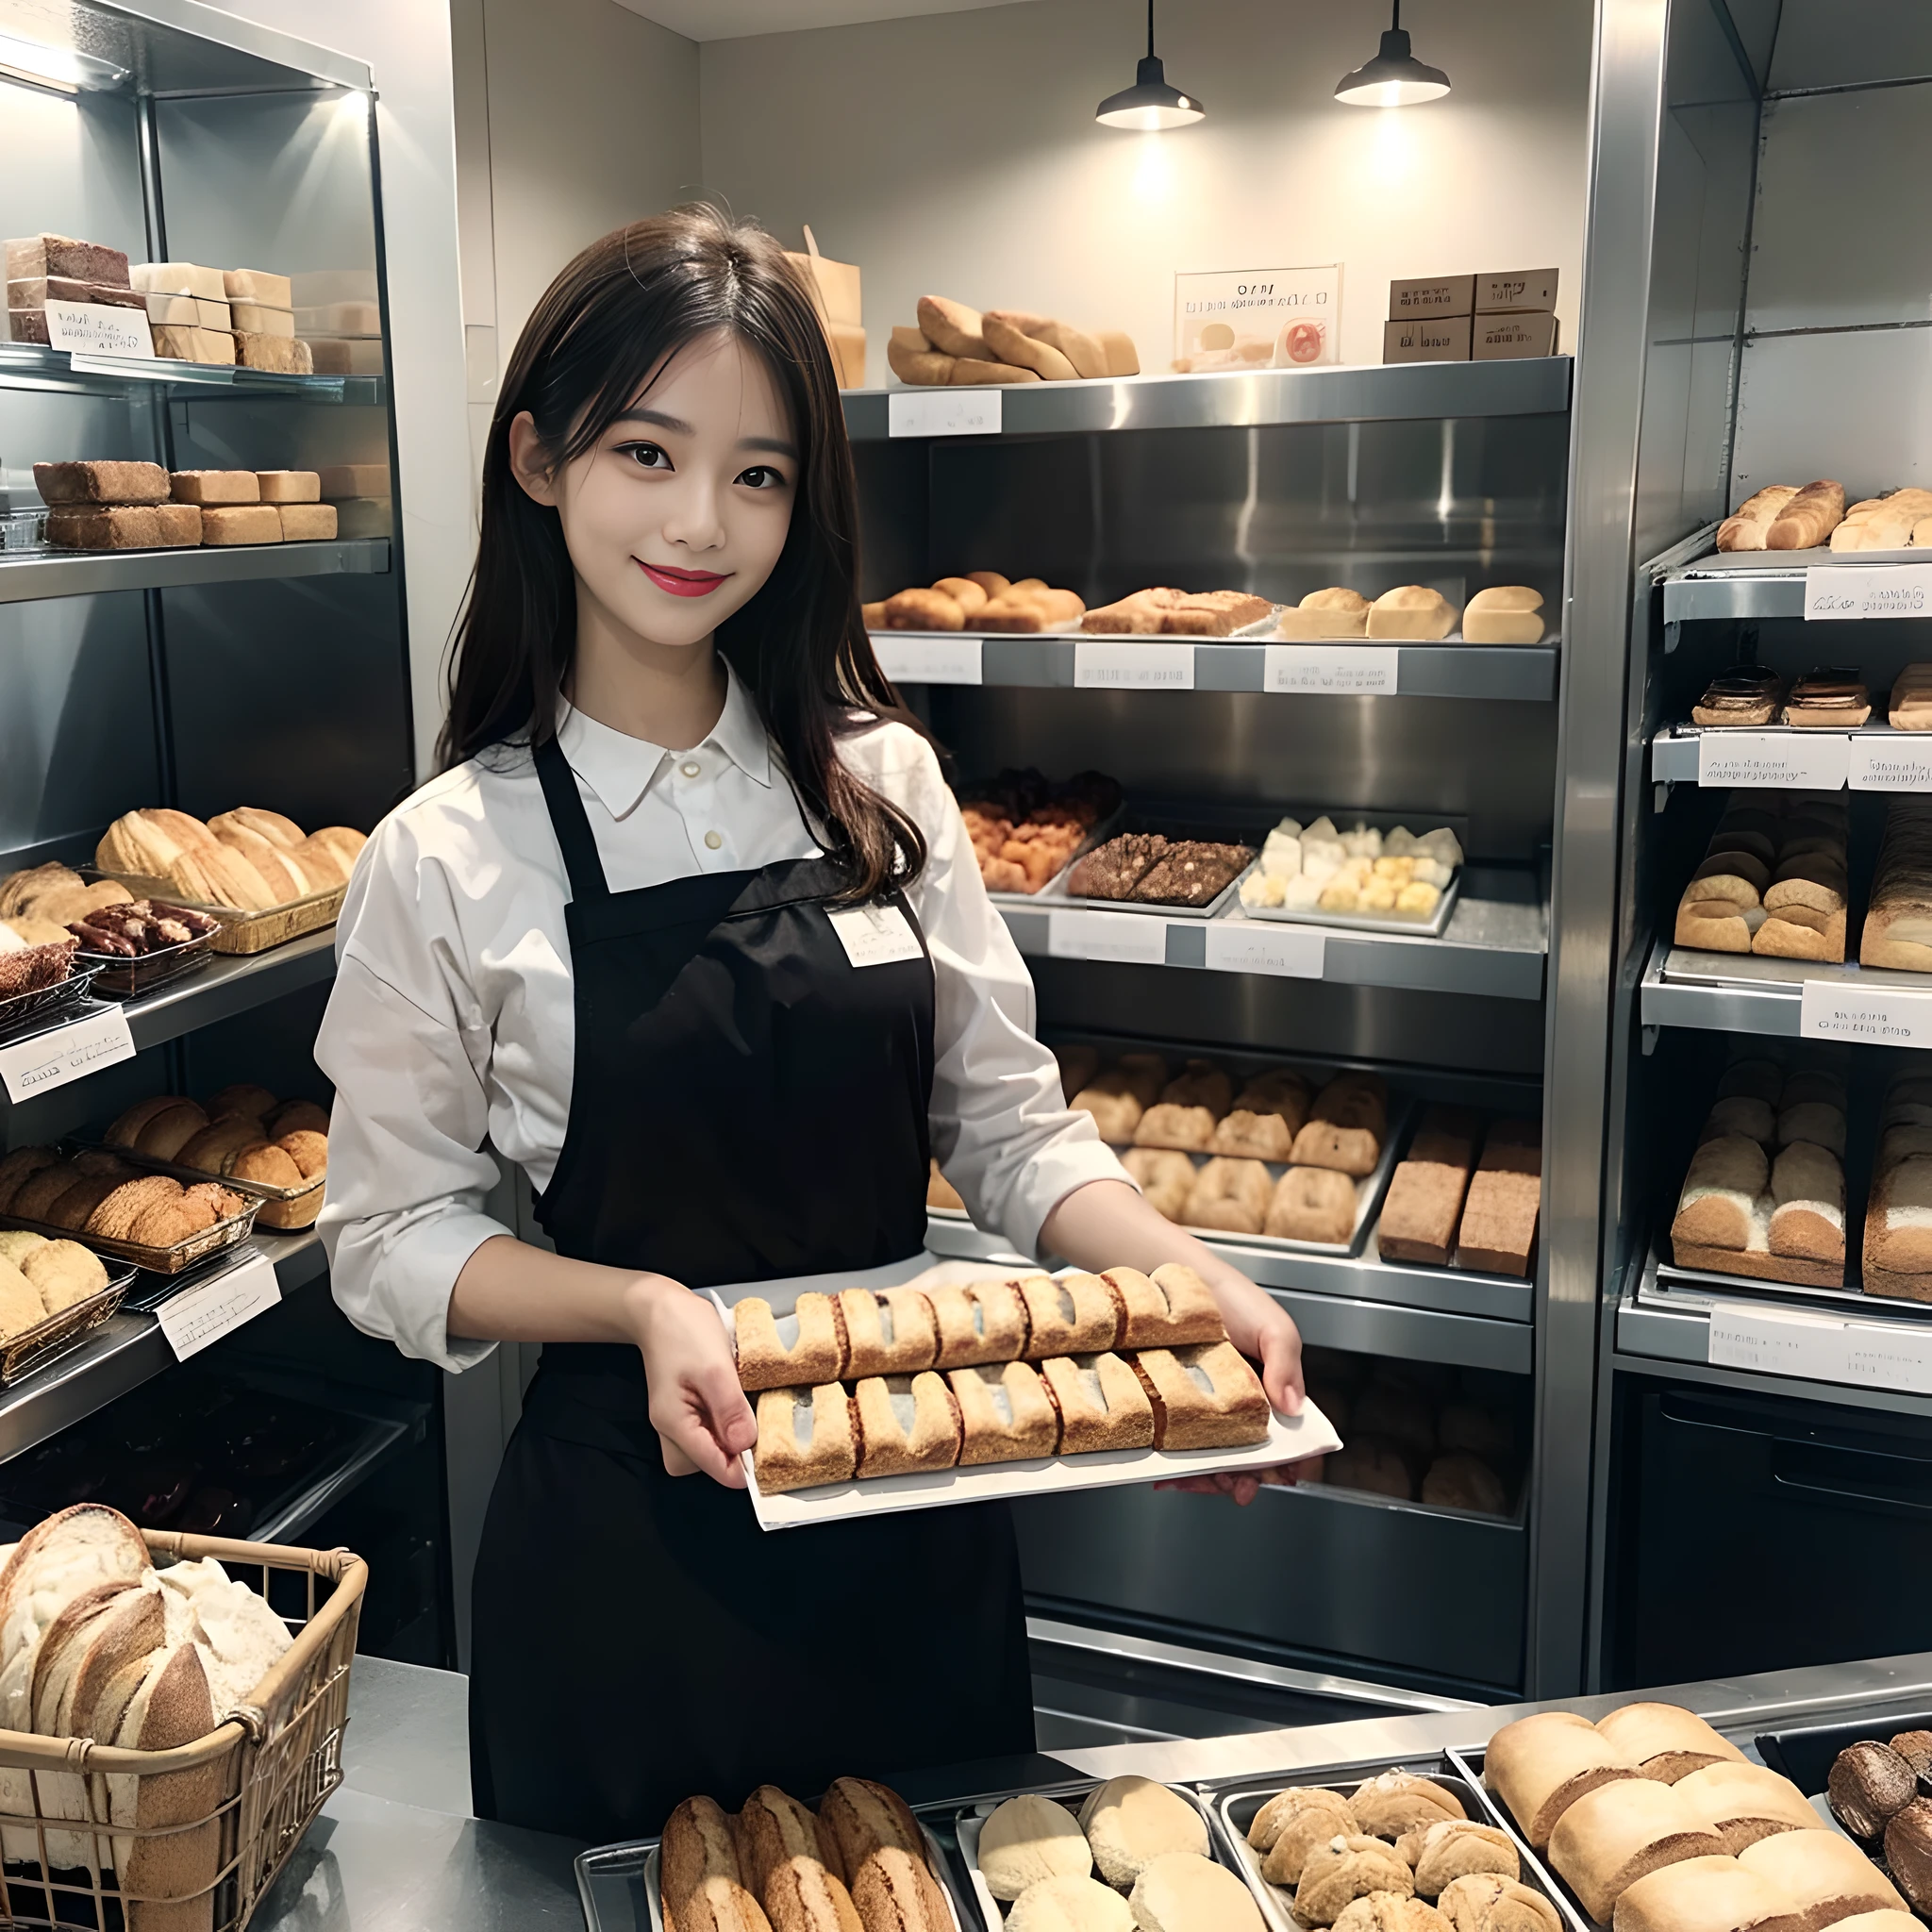 Empleada en panadería、pan recién horneado、Una sonrisa